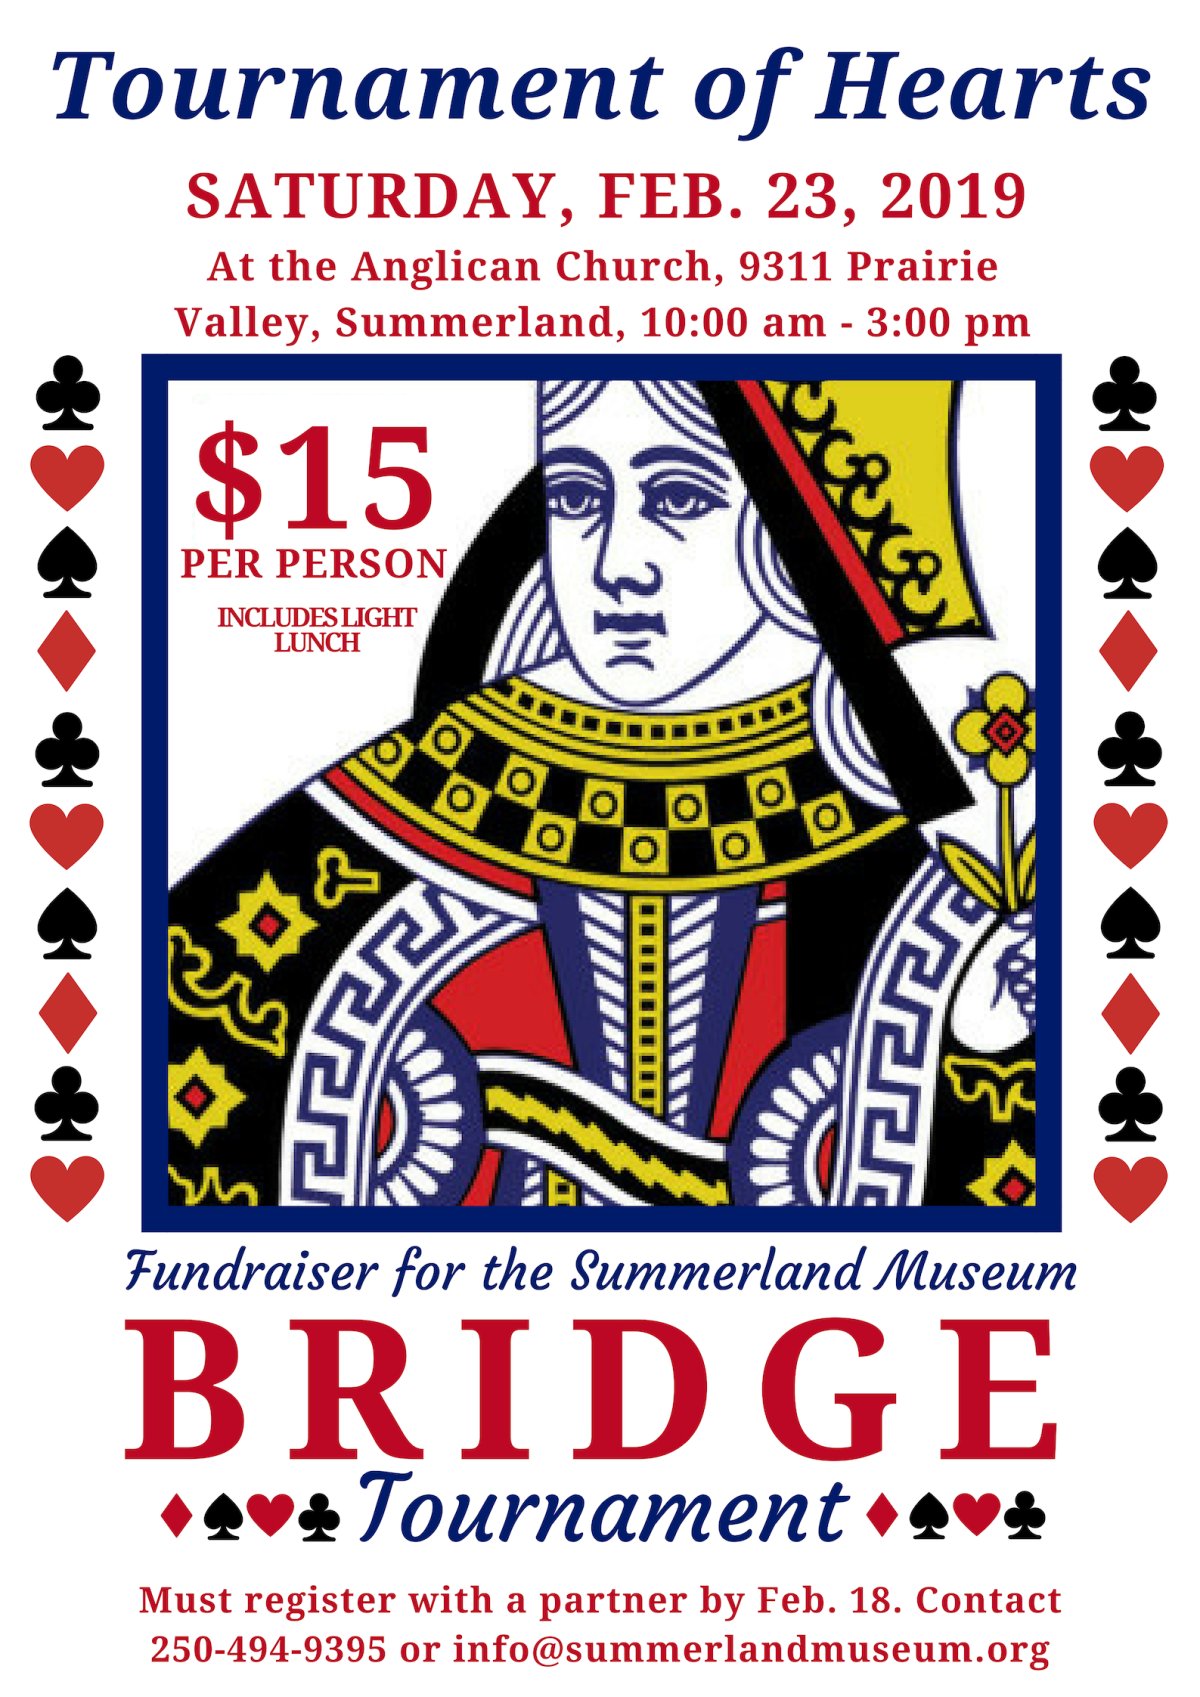 Bridge Tournament Fundraiser - image